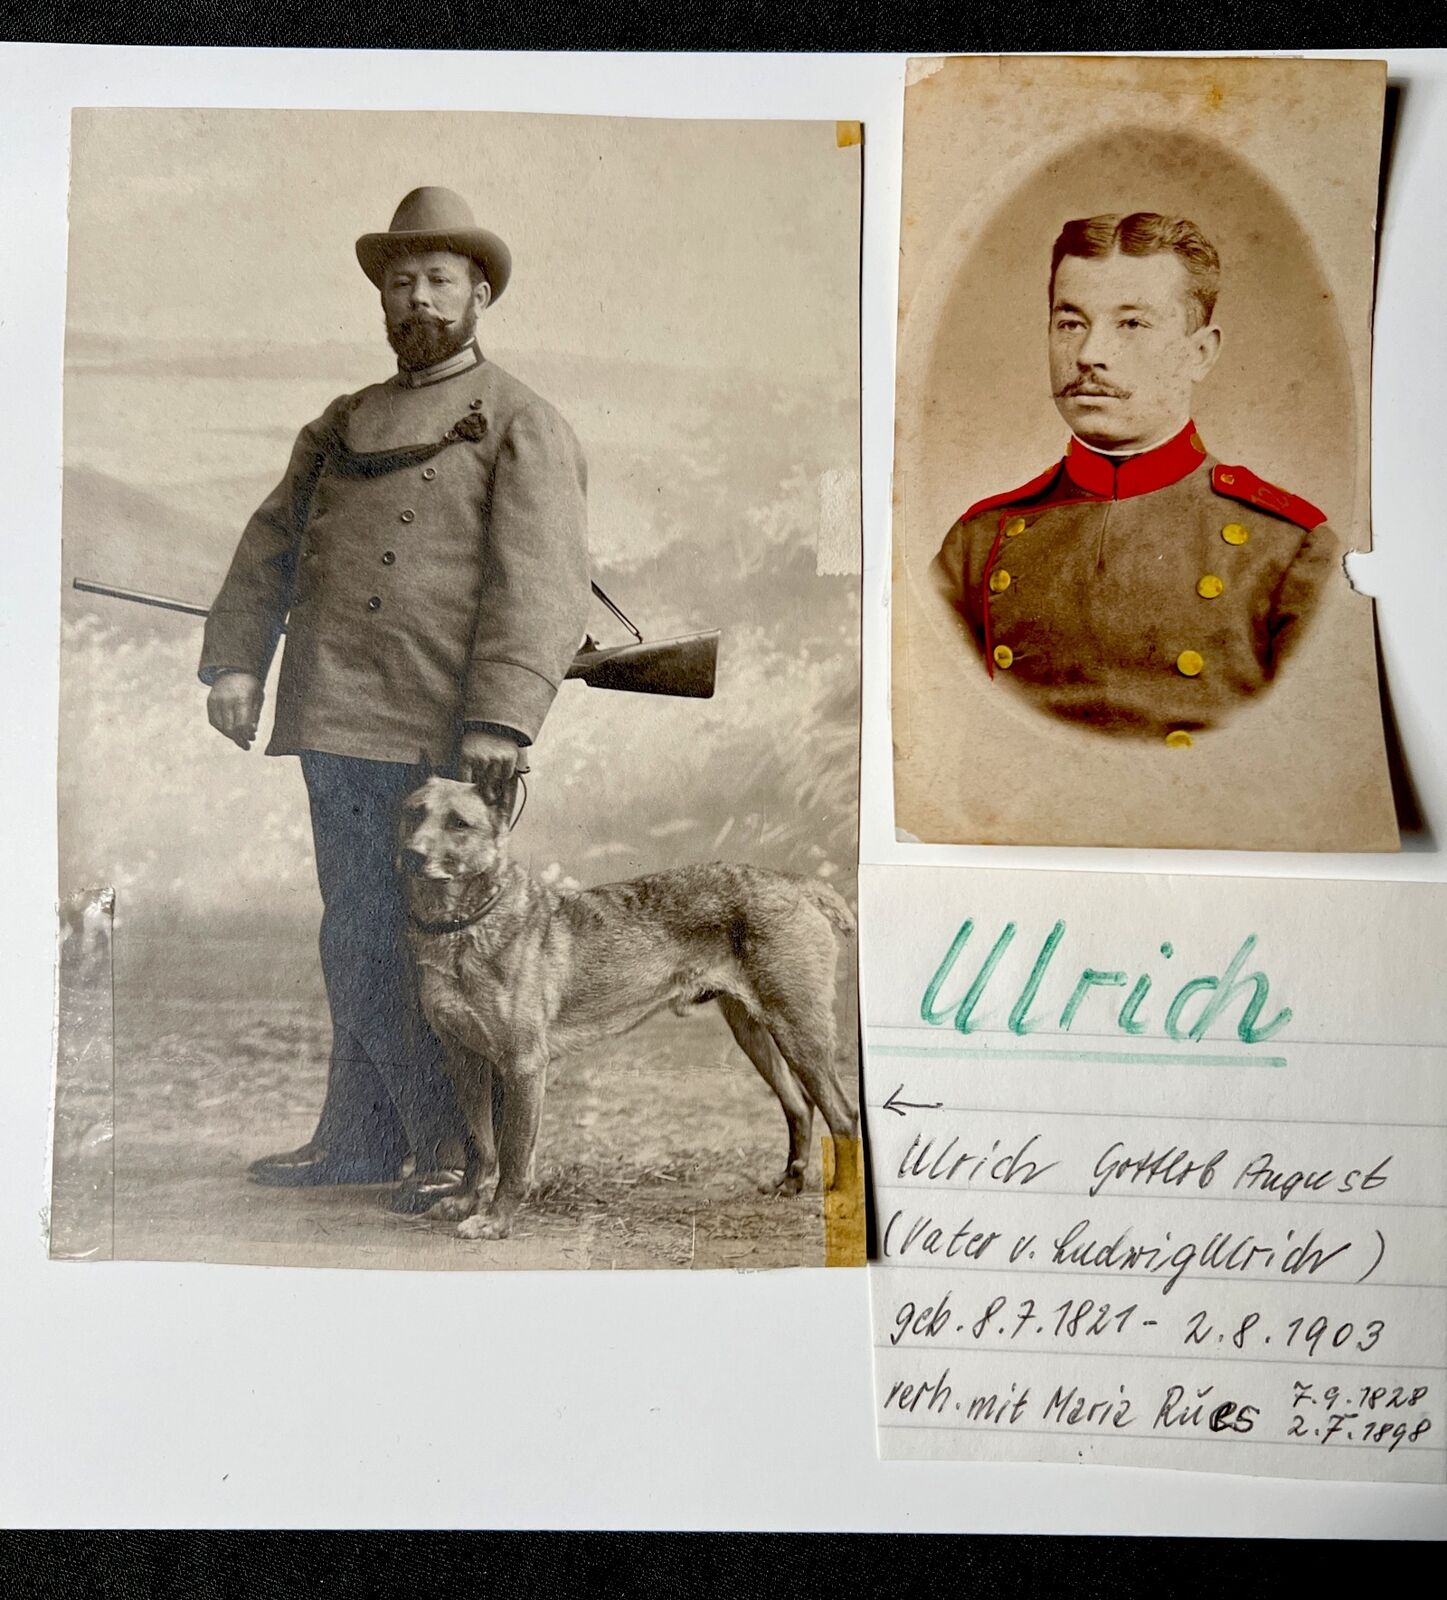 c. 1890s GOTTLIEB AUGUST ULRICH w Rifle MALENOIS Dog German Soldier Photos